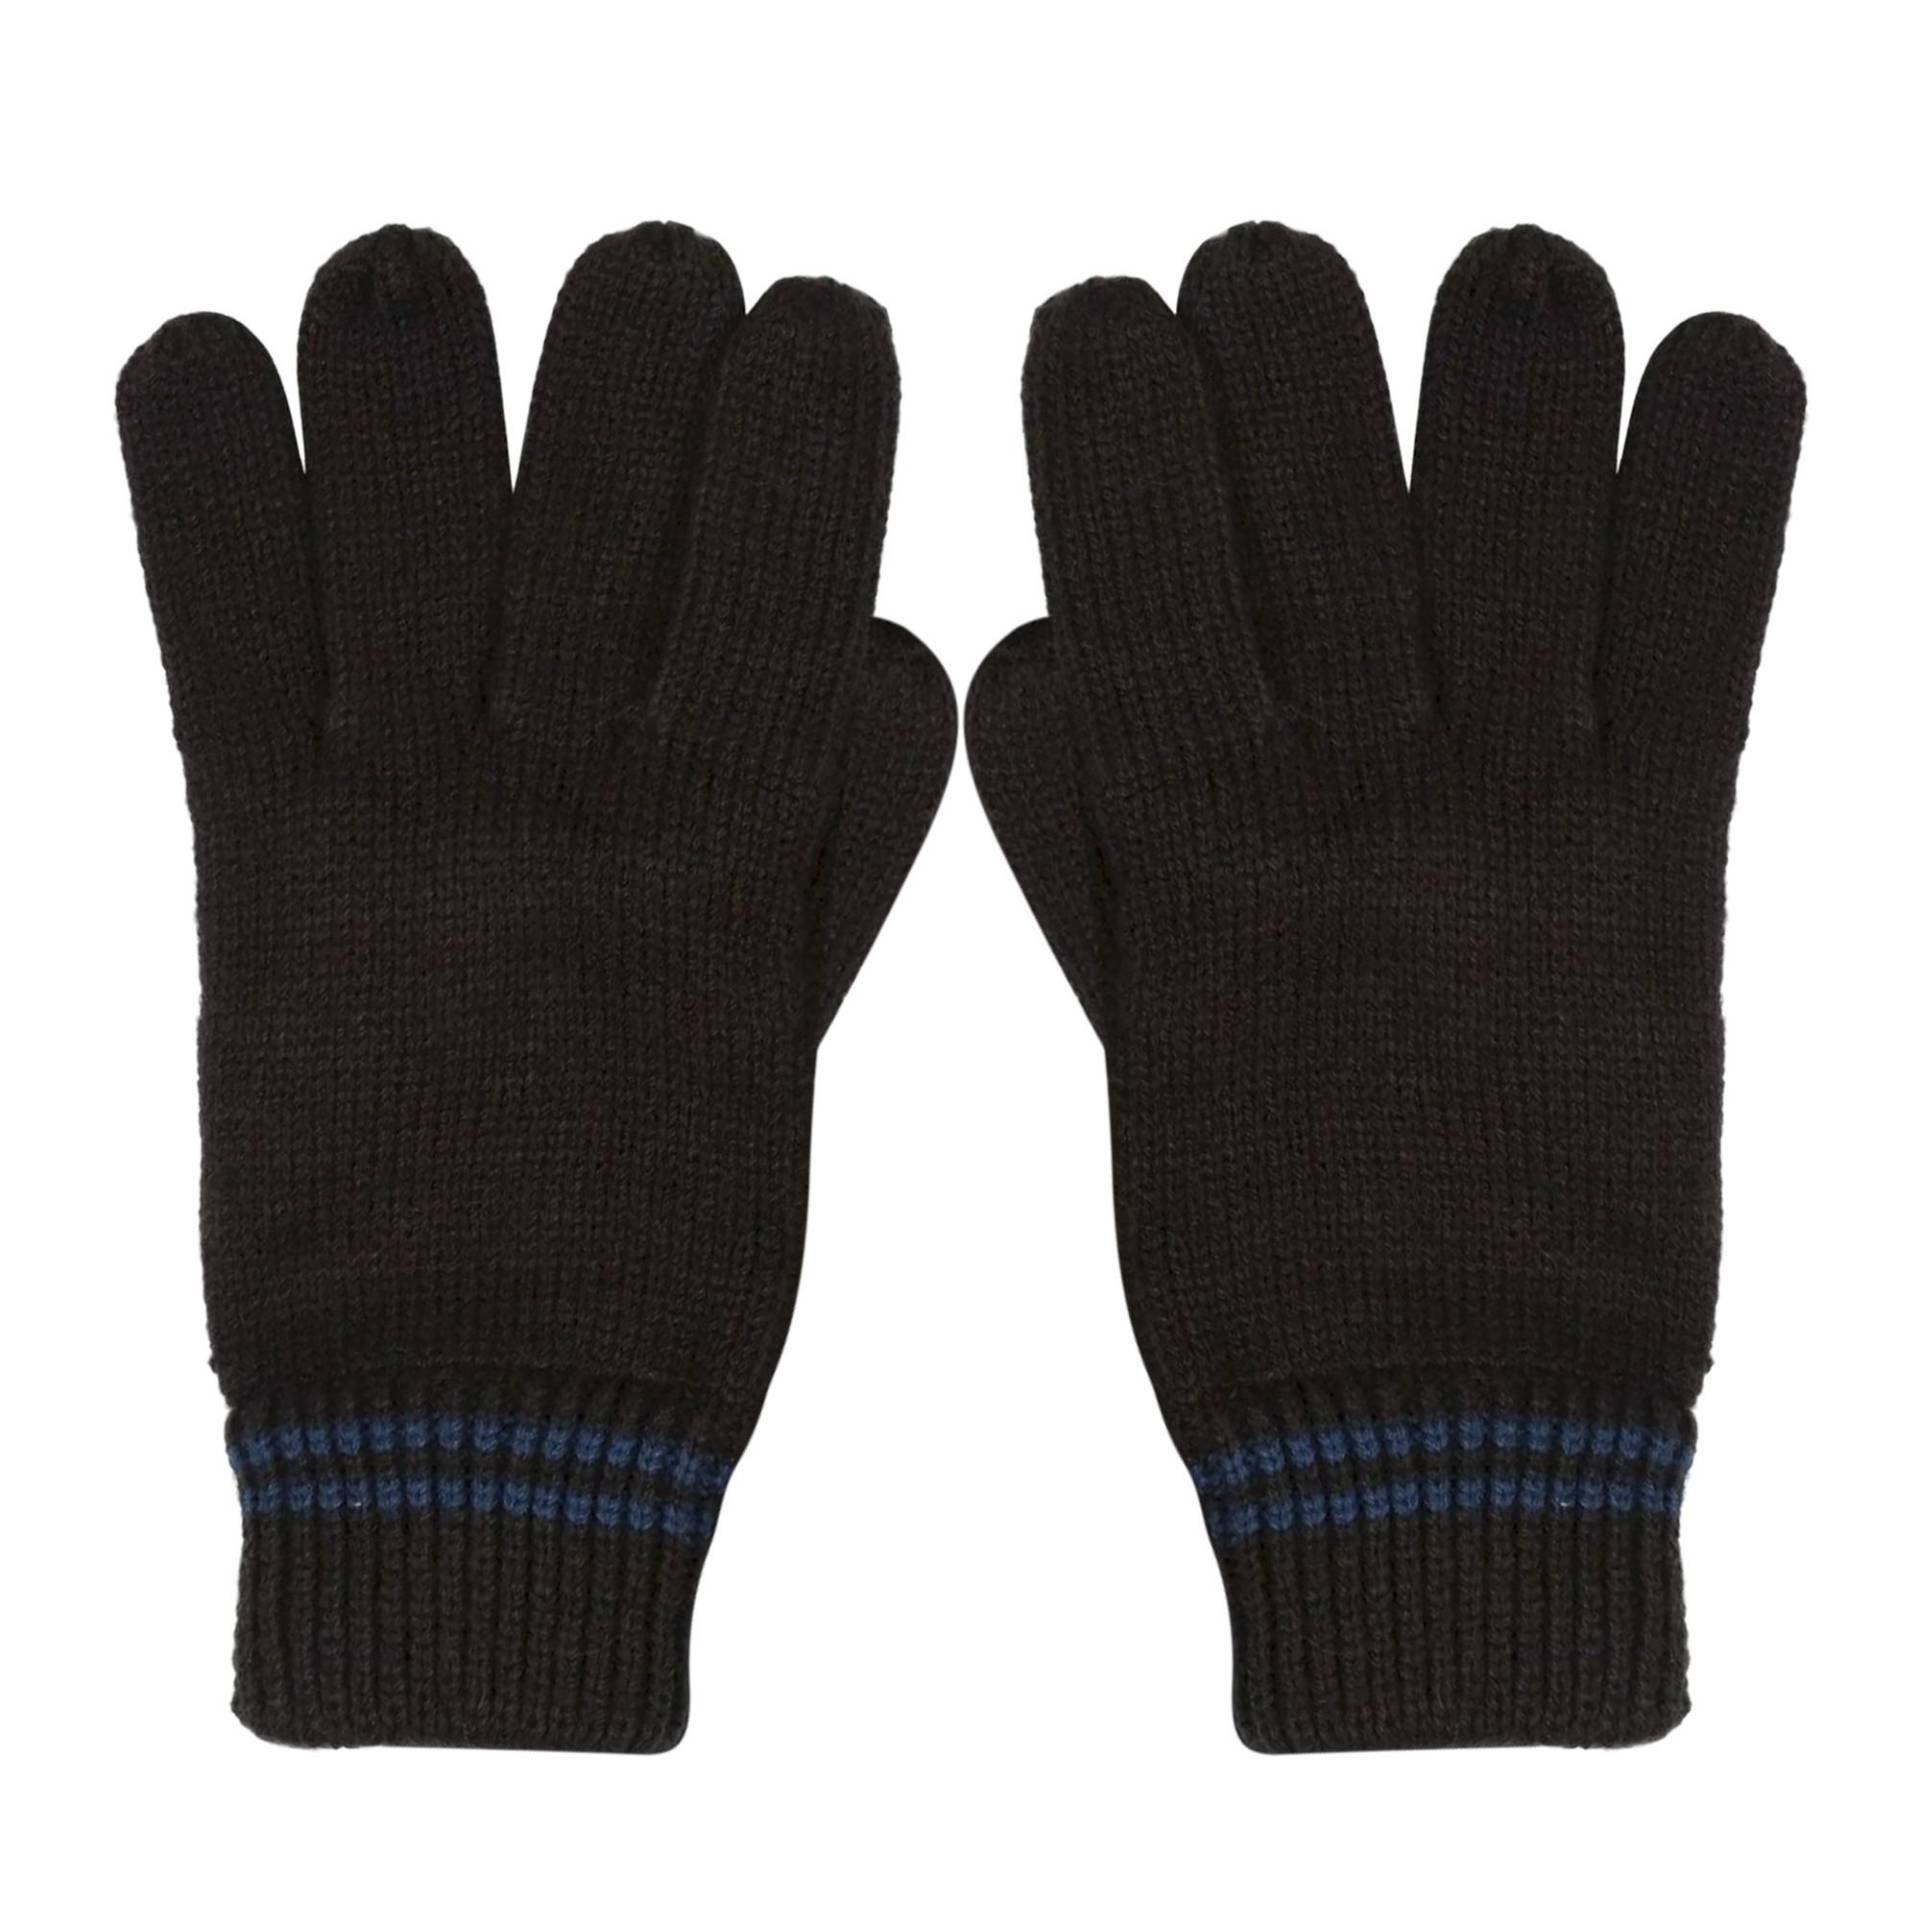 Handschuhe Balton Iii, Jerseyware Herren Schwarz L/XL von Regatta